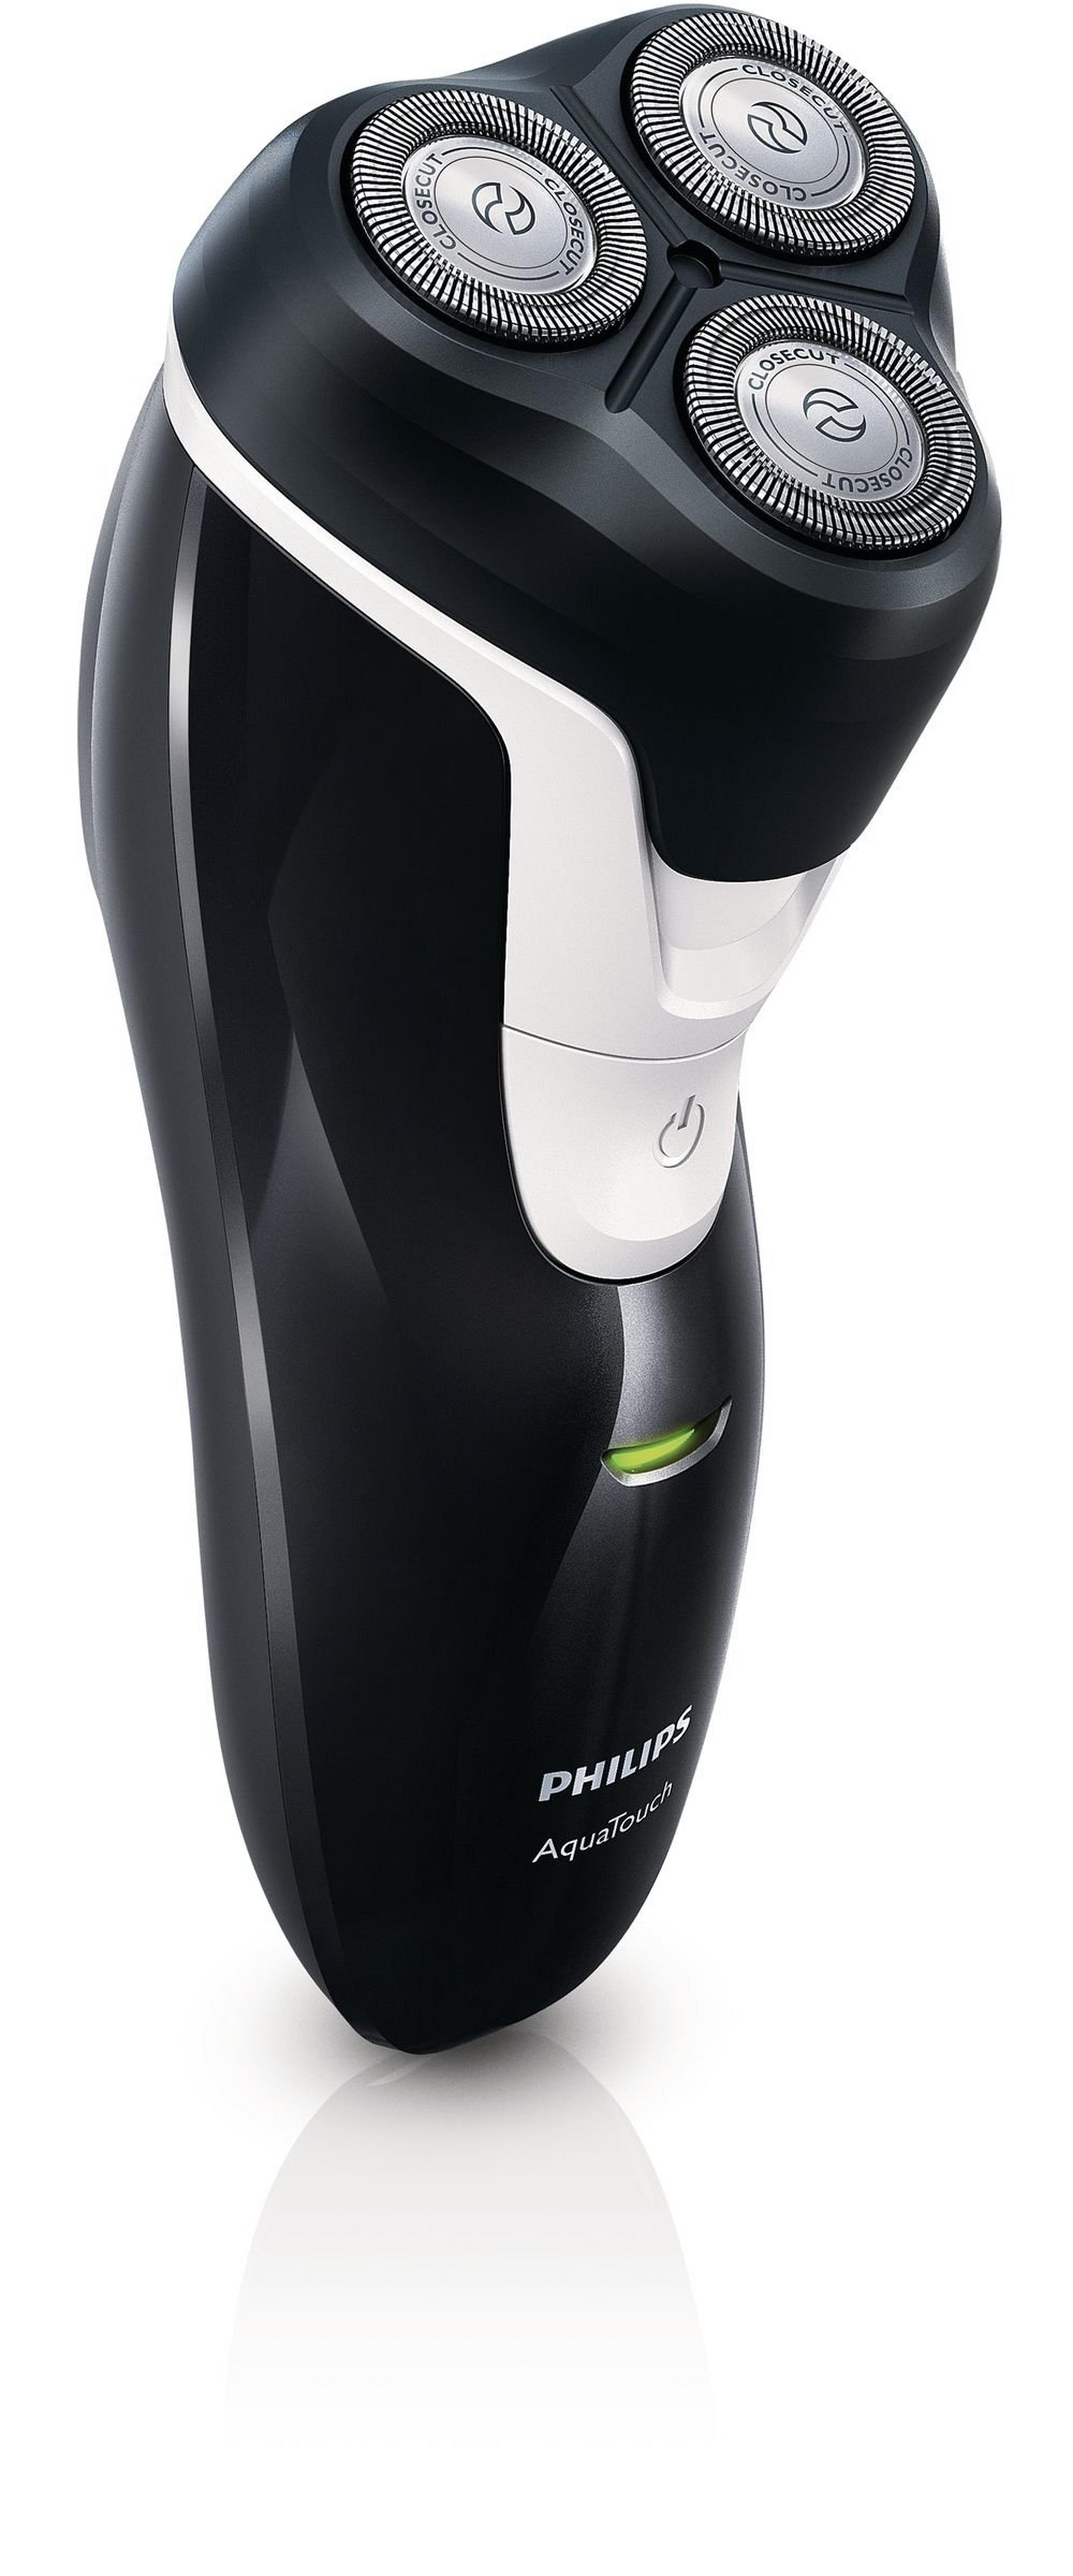 Philips Aquatec 3HD Shaver AT610/14